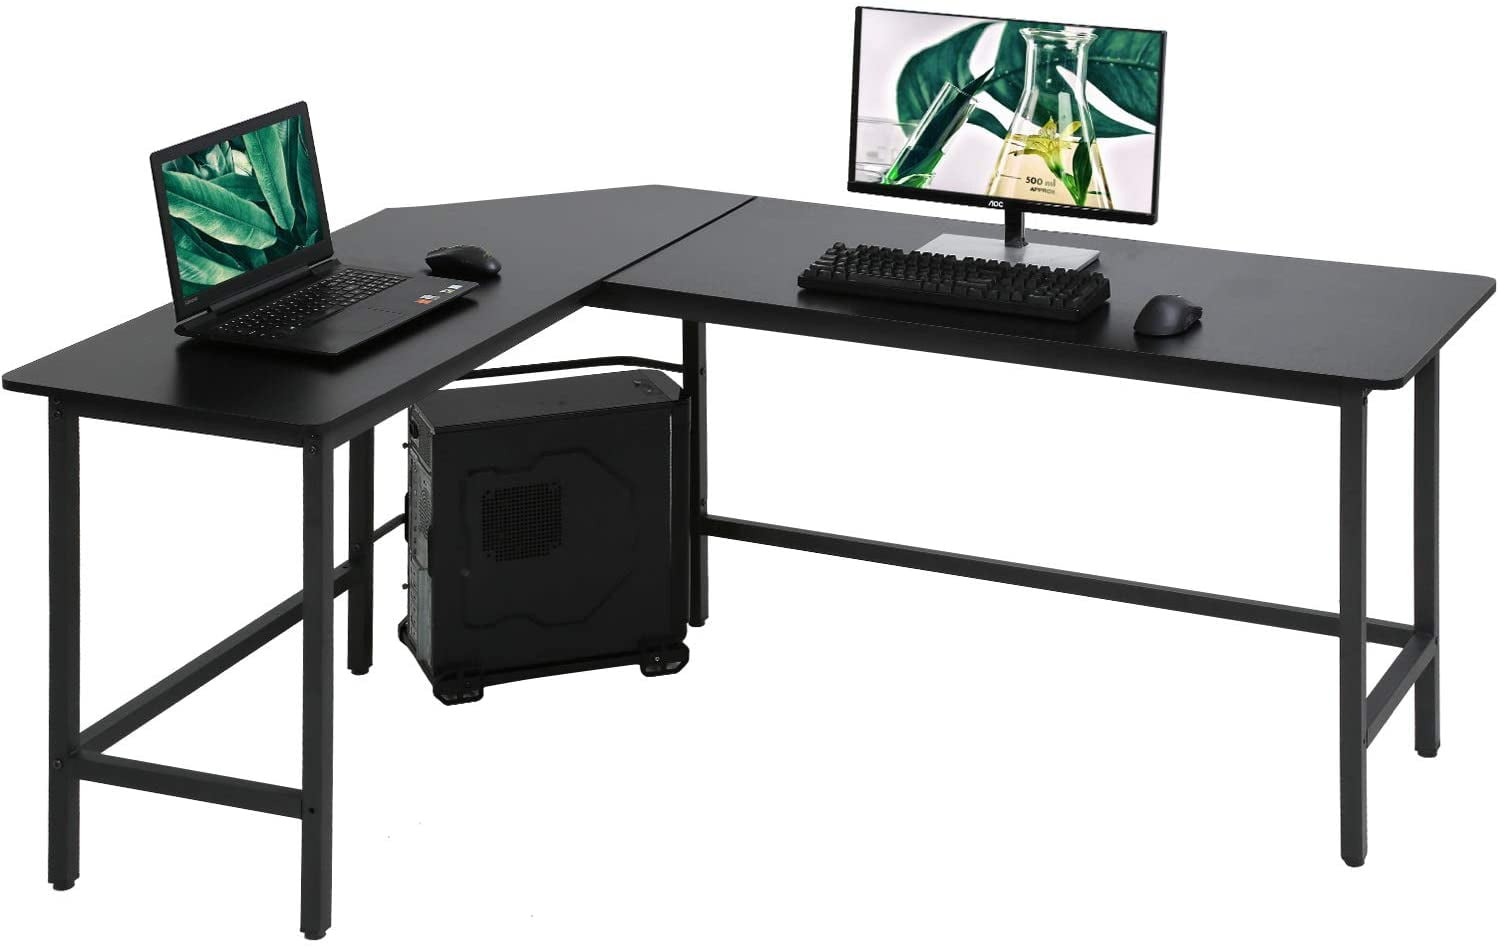 Corner Desk Computer Table Laptop Workstation Gaming Desktop Home Study Office 